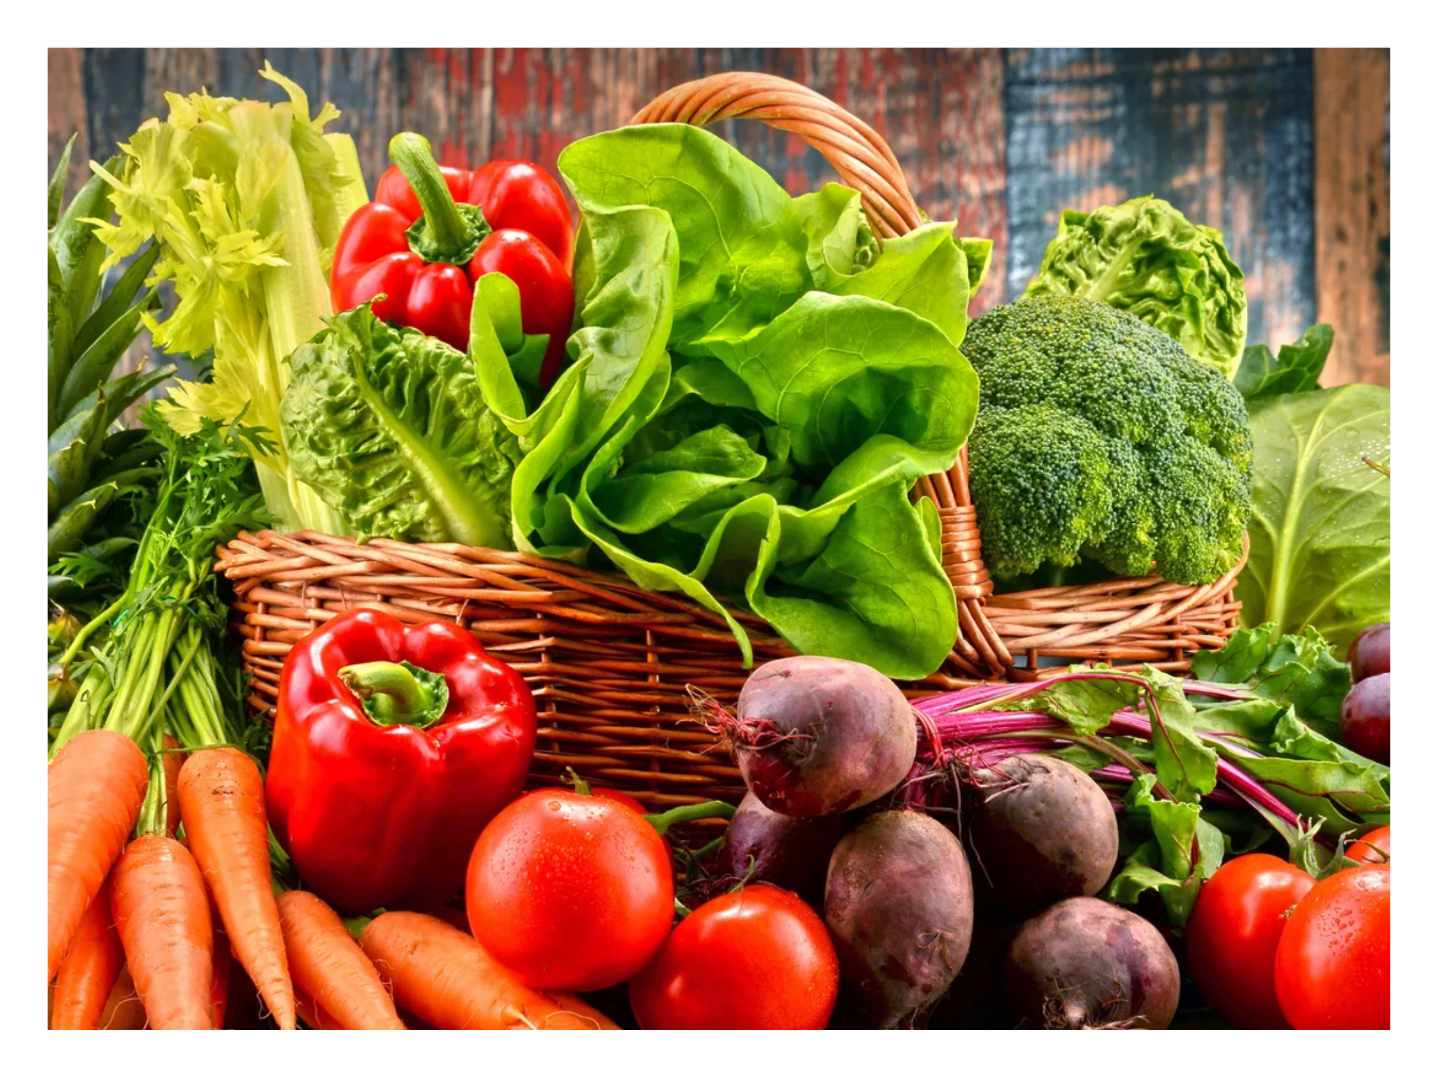 Vegetables Price News Hindi : कोलकाता-मुंबई में सब्जियों के दाम में आई कमी |